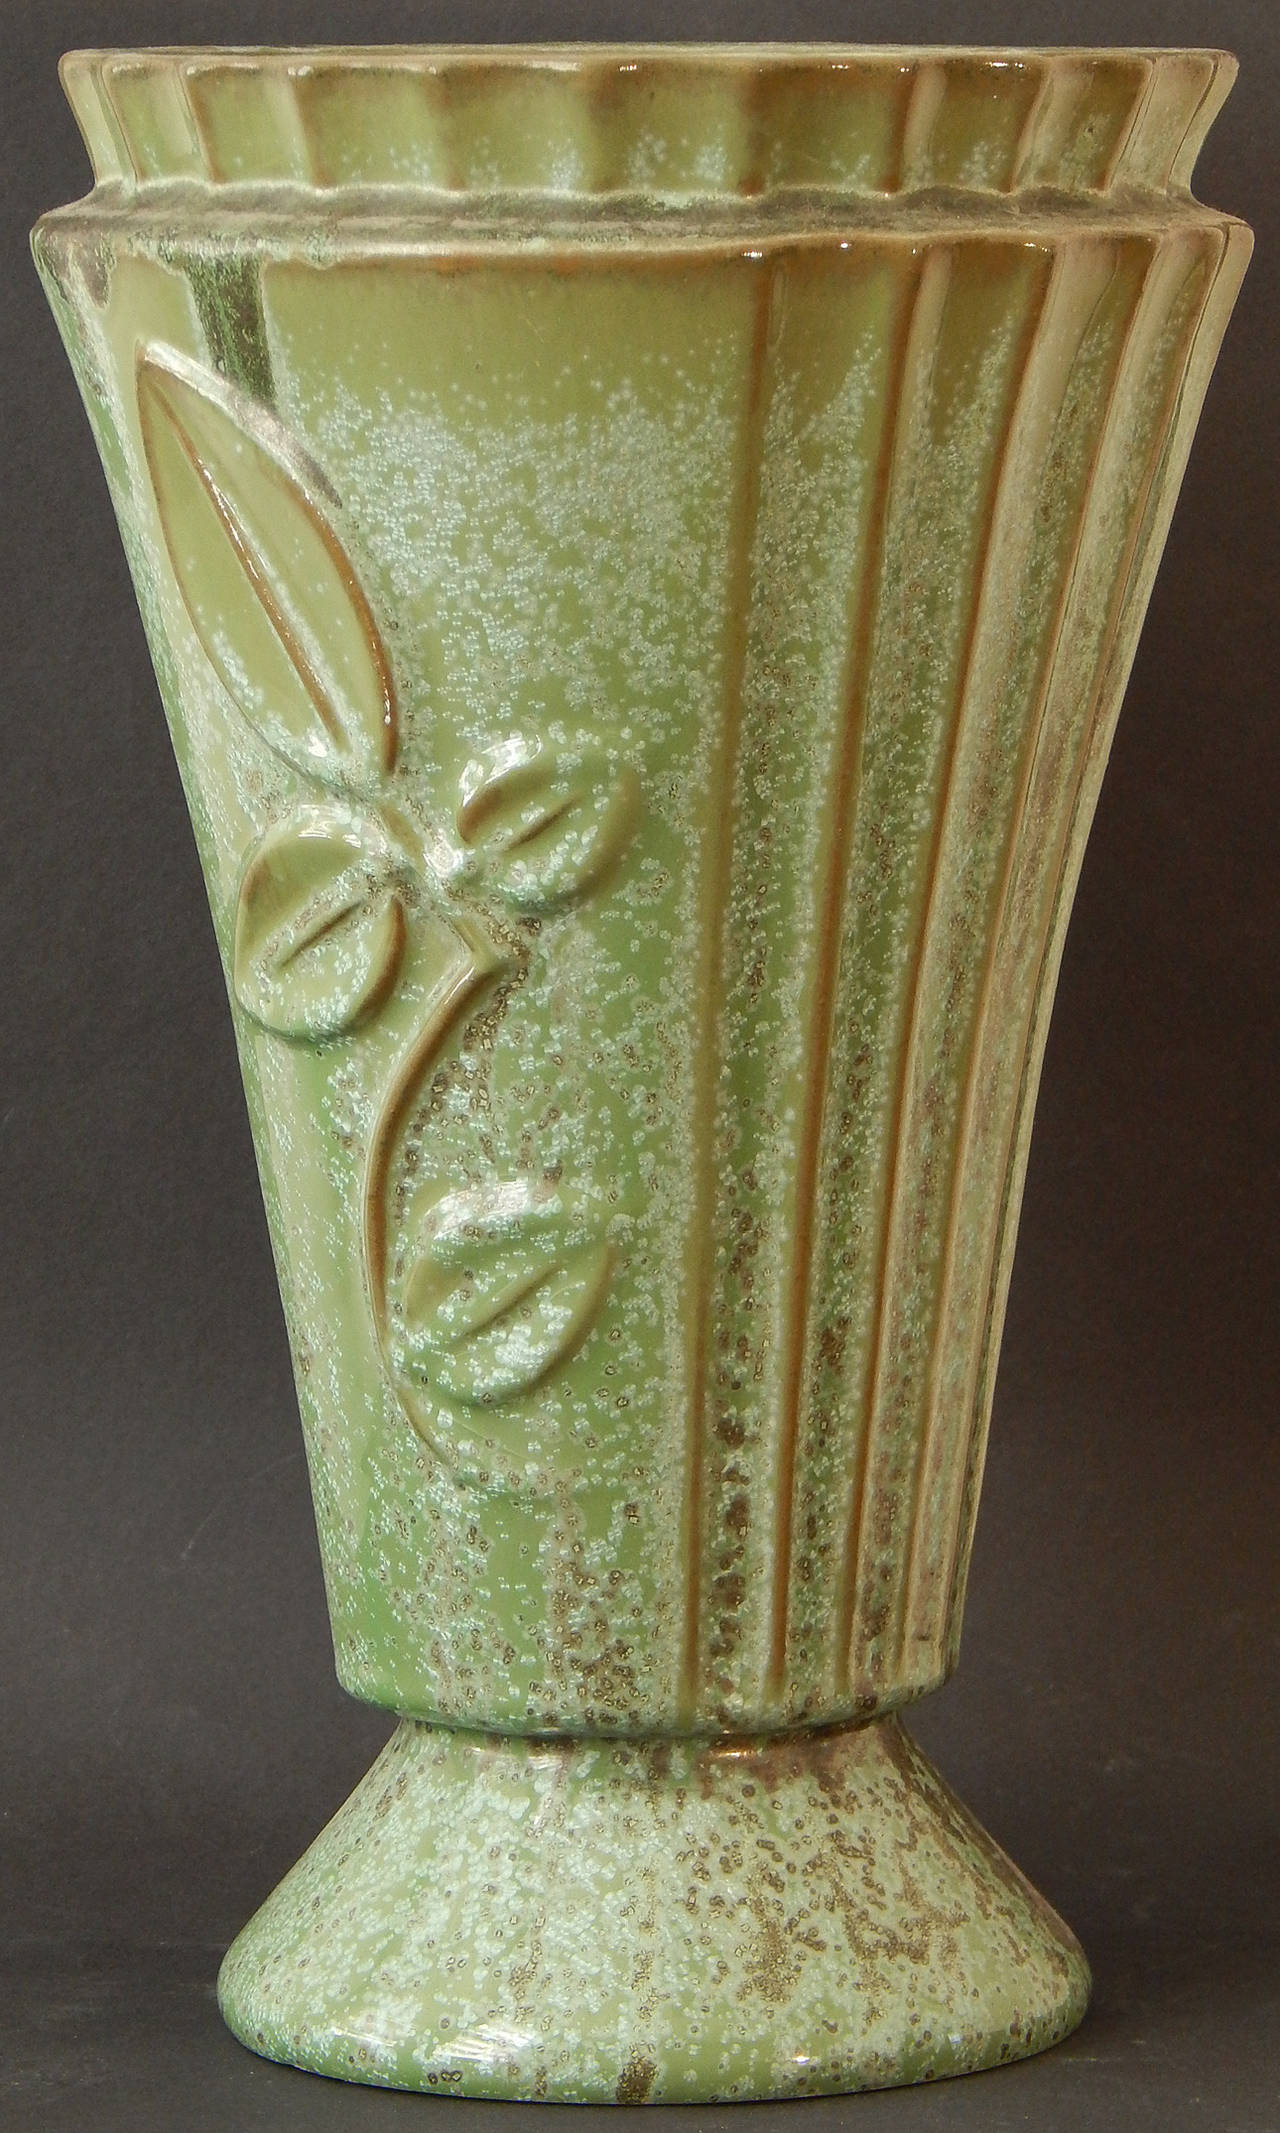 Eine sehr seltene Form A, aber glasiert mit der prächtigen gesprenkelten und streifigen Glasur, für die Fulper Pottery berühmt war. Diese geriffelte, aufgeweitete Vase ist mit tiefen Basrelief-Blatt- und Branch-Formen verziert, die in klassischer